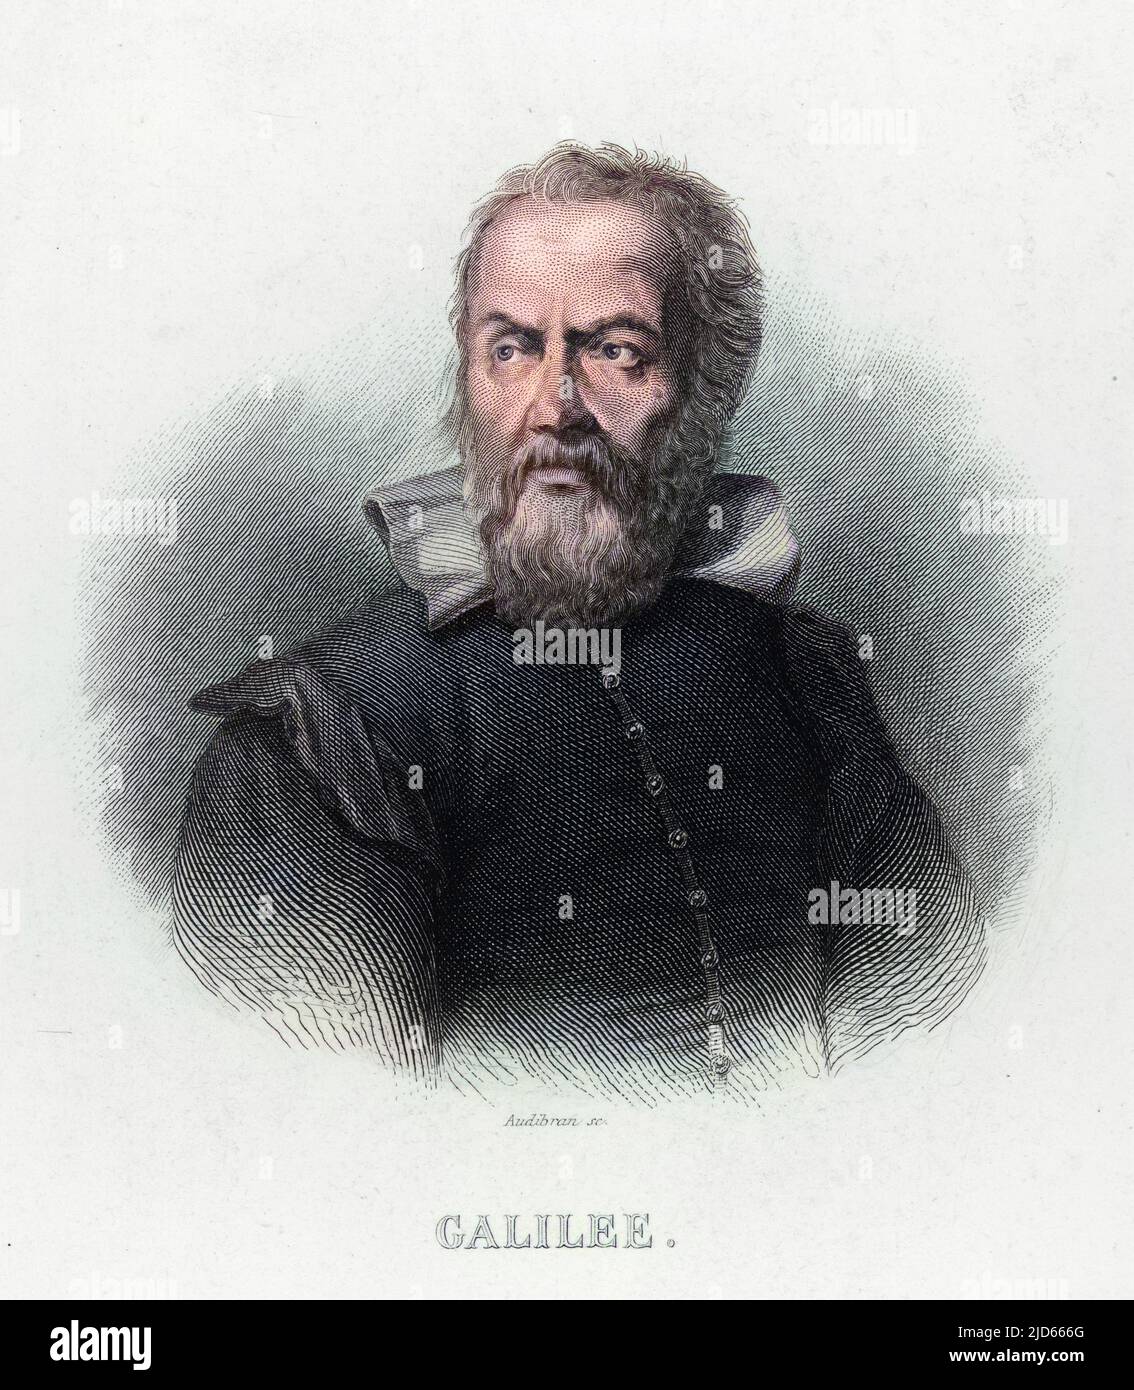 Galileo Galilei (1564-1642), fisico, matematico, astronomo e filosofo italiano. Si è messo in difficoltà con la chiesa per la sua affermazione che il sole, e non la terra, è al centro dell'universo. Data: Circa 1614 Foto Stock